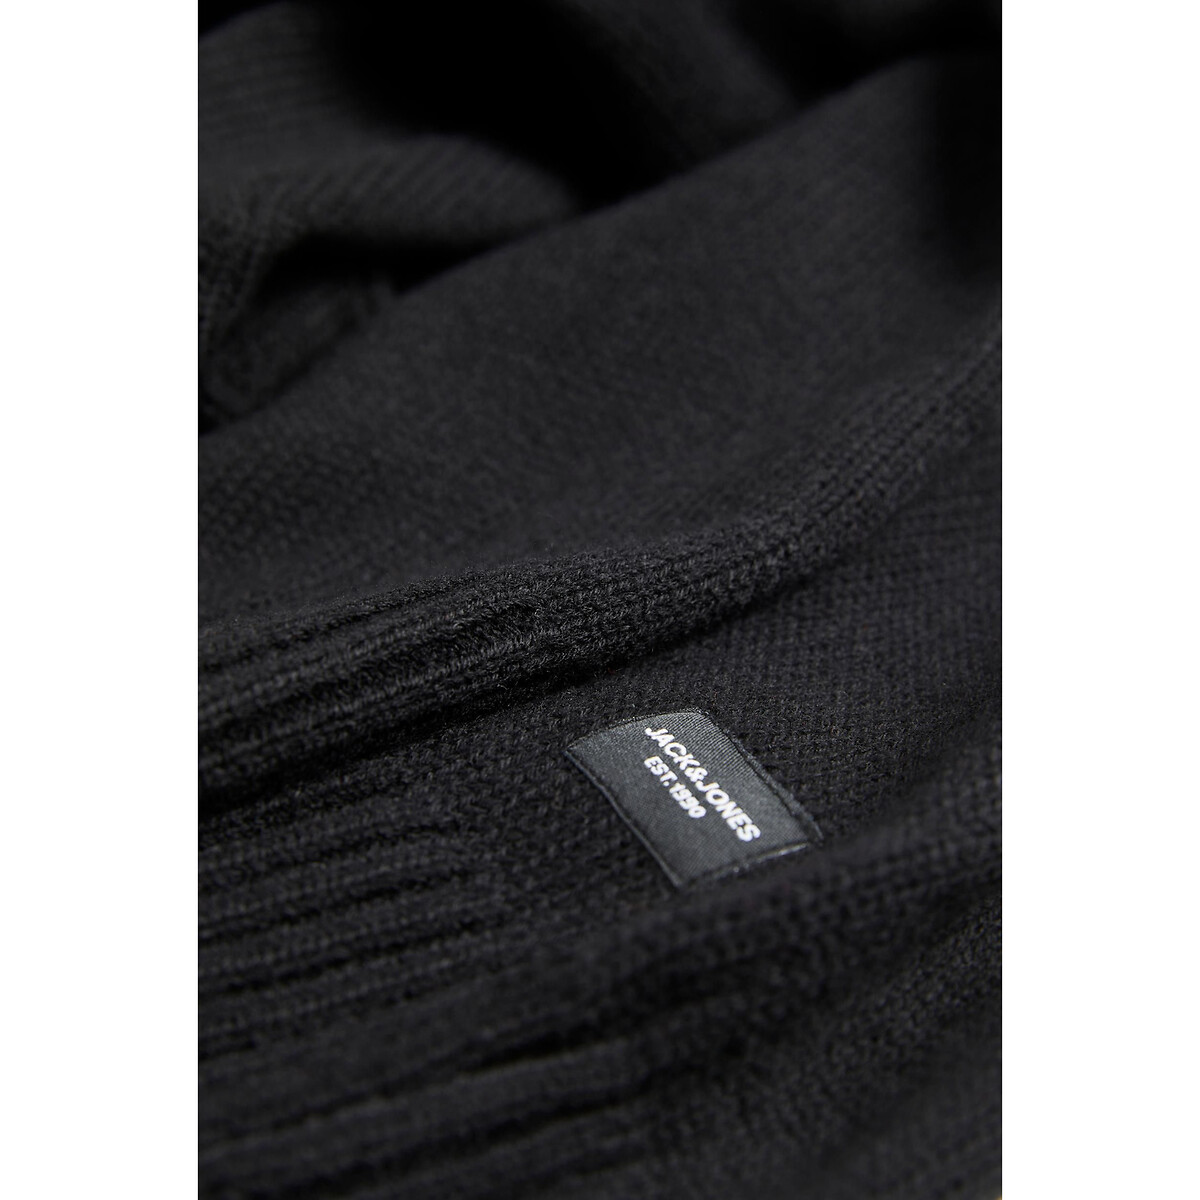 Пуловер С круглым вырезом Jjejack S черный LaRedoute, размер S - фото 3